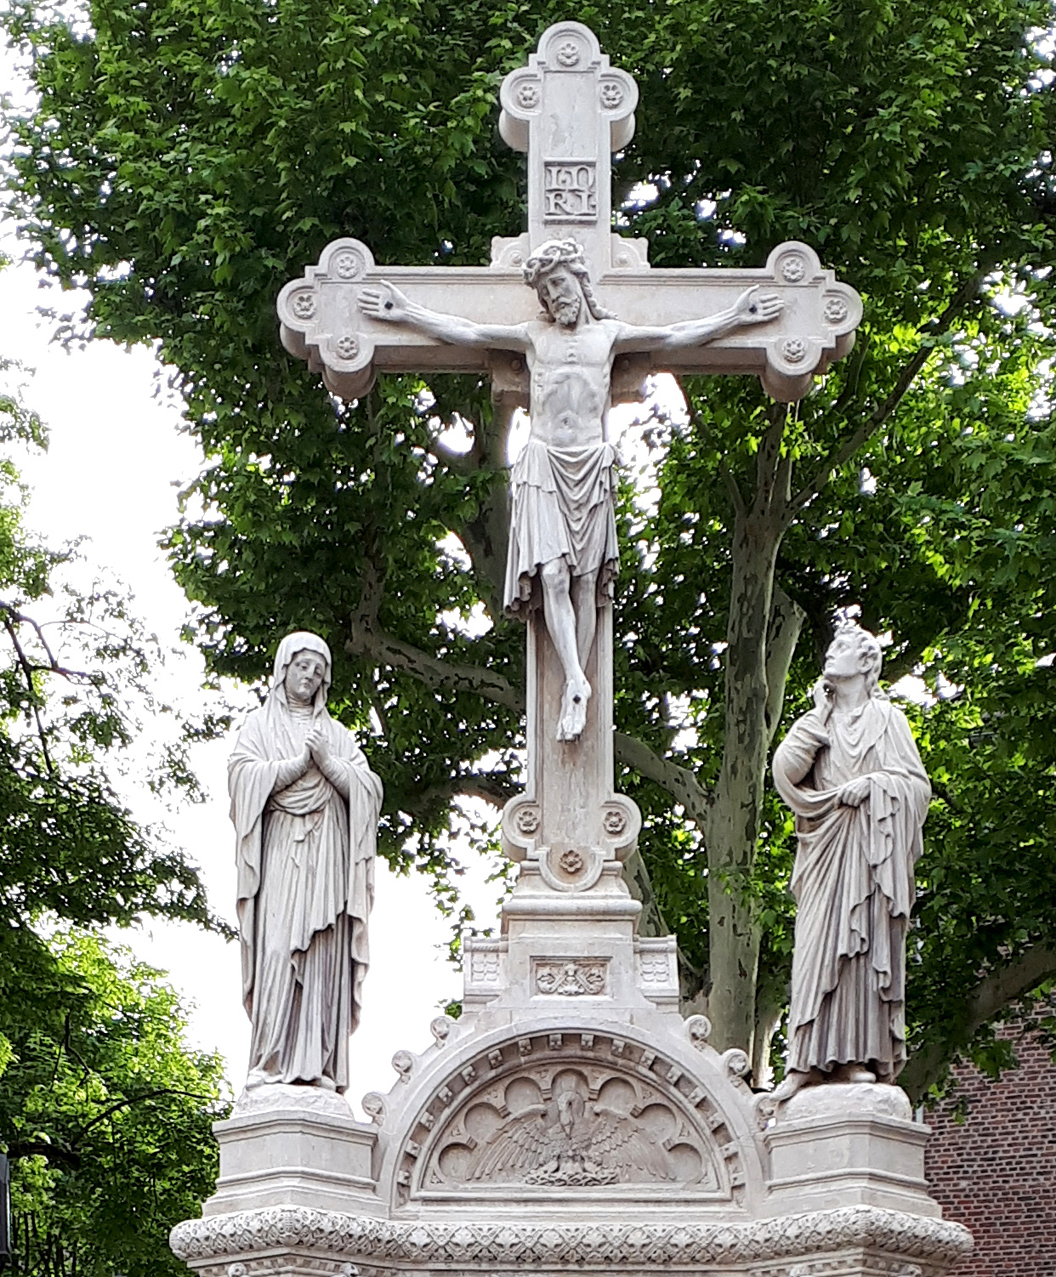 Kreuzigungsgruppe_St._Jakob,_Aachen, Urheber ArthurMcGill, 2019, © nach CC BY 3.0 (Ausschnitt)